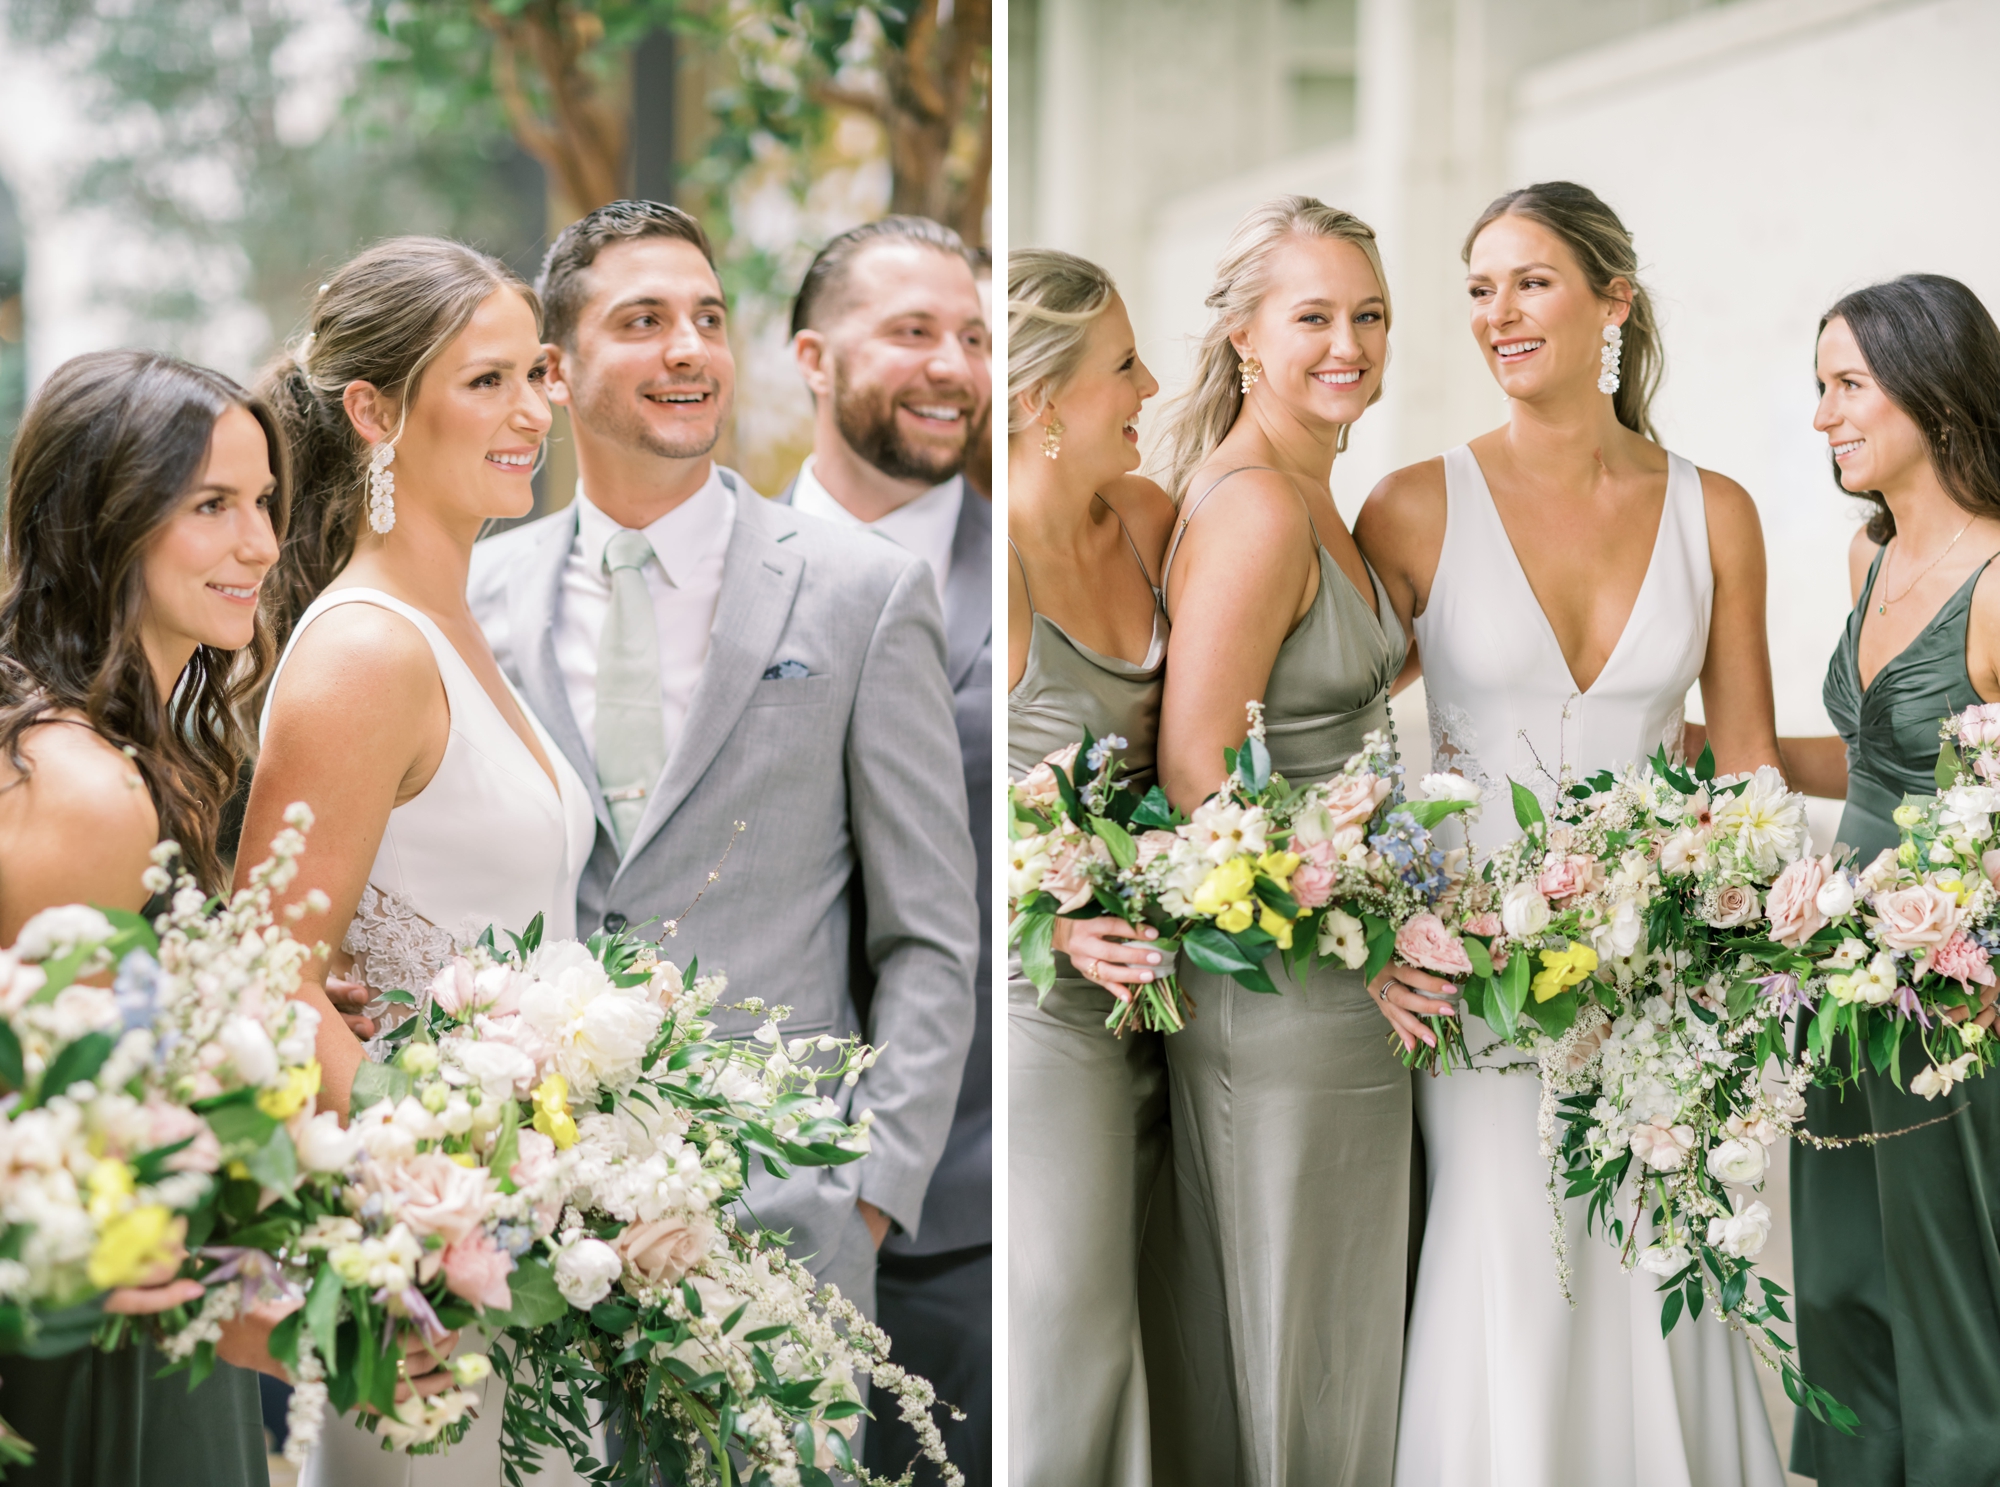 photos of a wedding party at a garden-inspired wedding